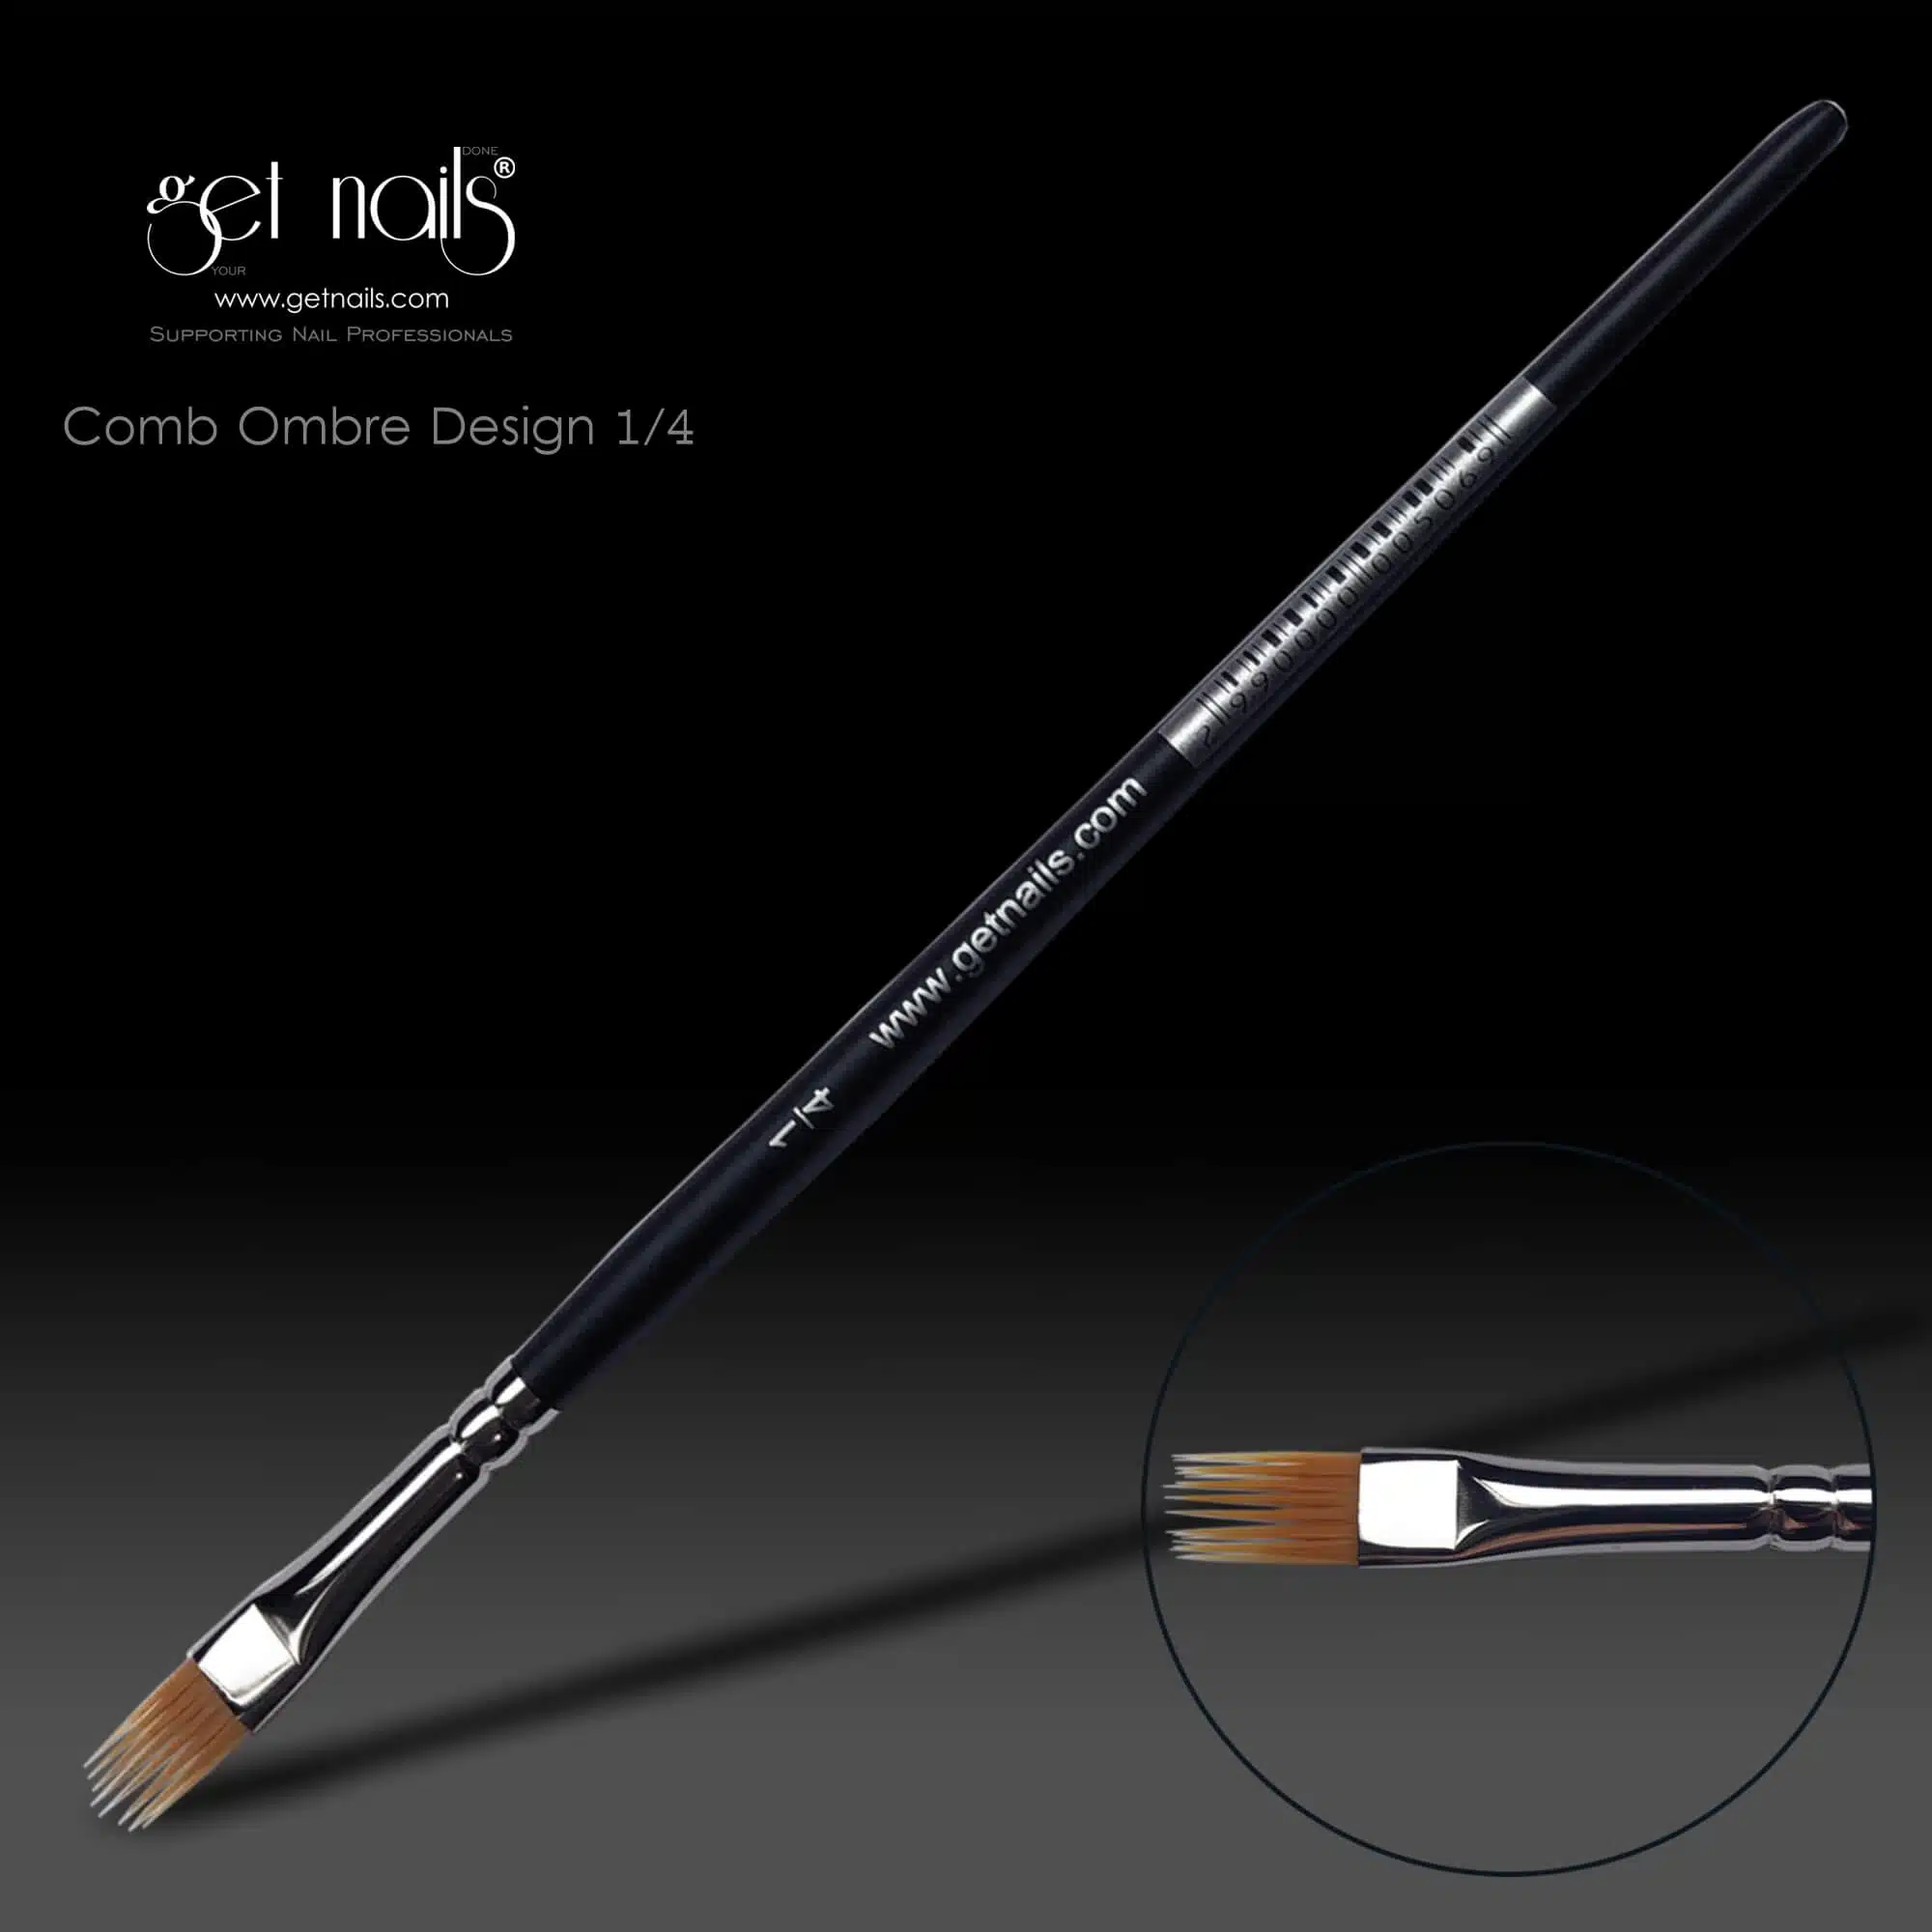 Get Nails Austria - Design brush Comb Ombre No. 1/4